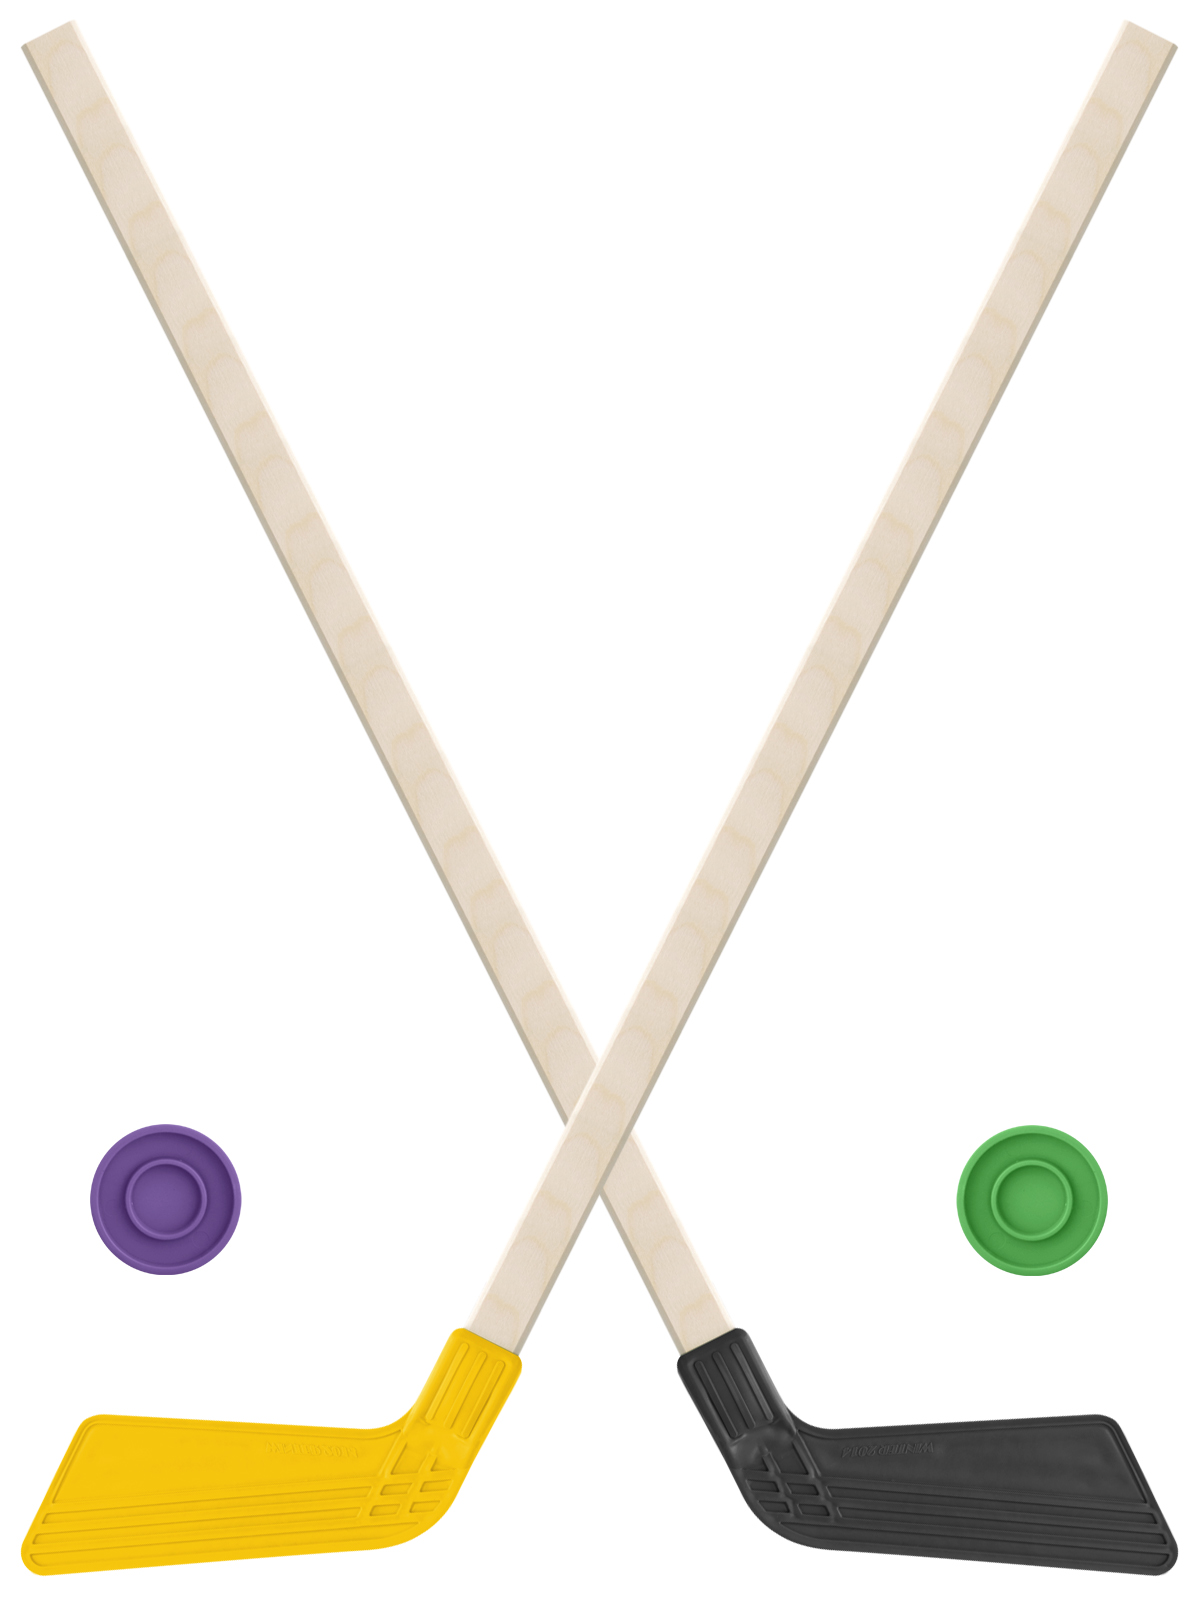 Детский хоккейный набор Задира-плюс клюшка хоккейная детская 80 см (жёл,черн)2шт +2 шайбы